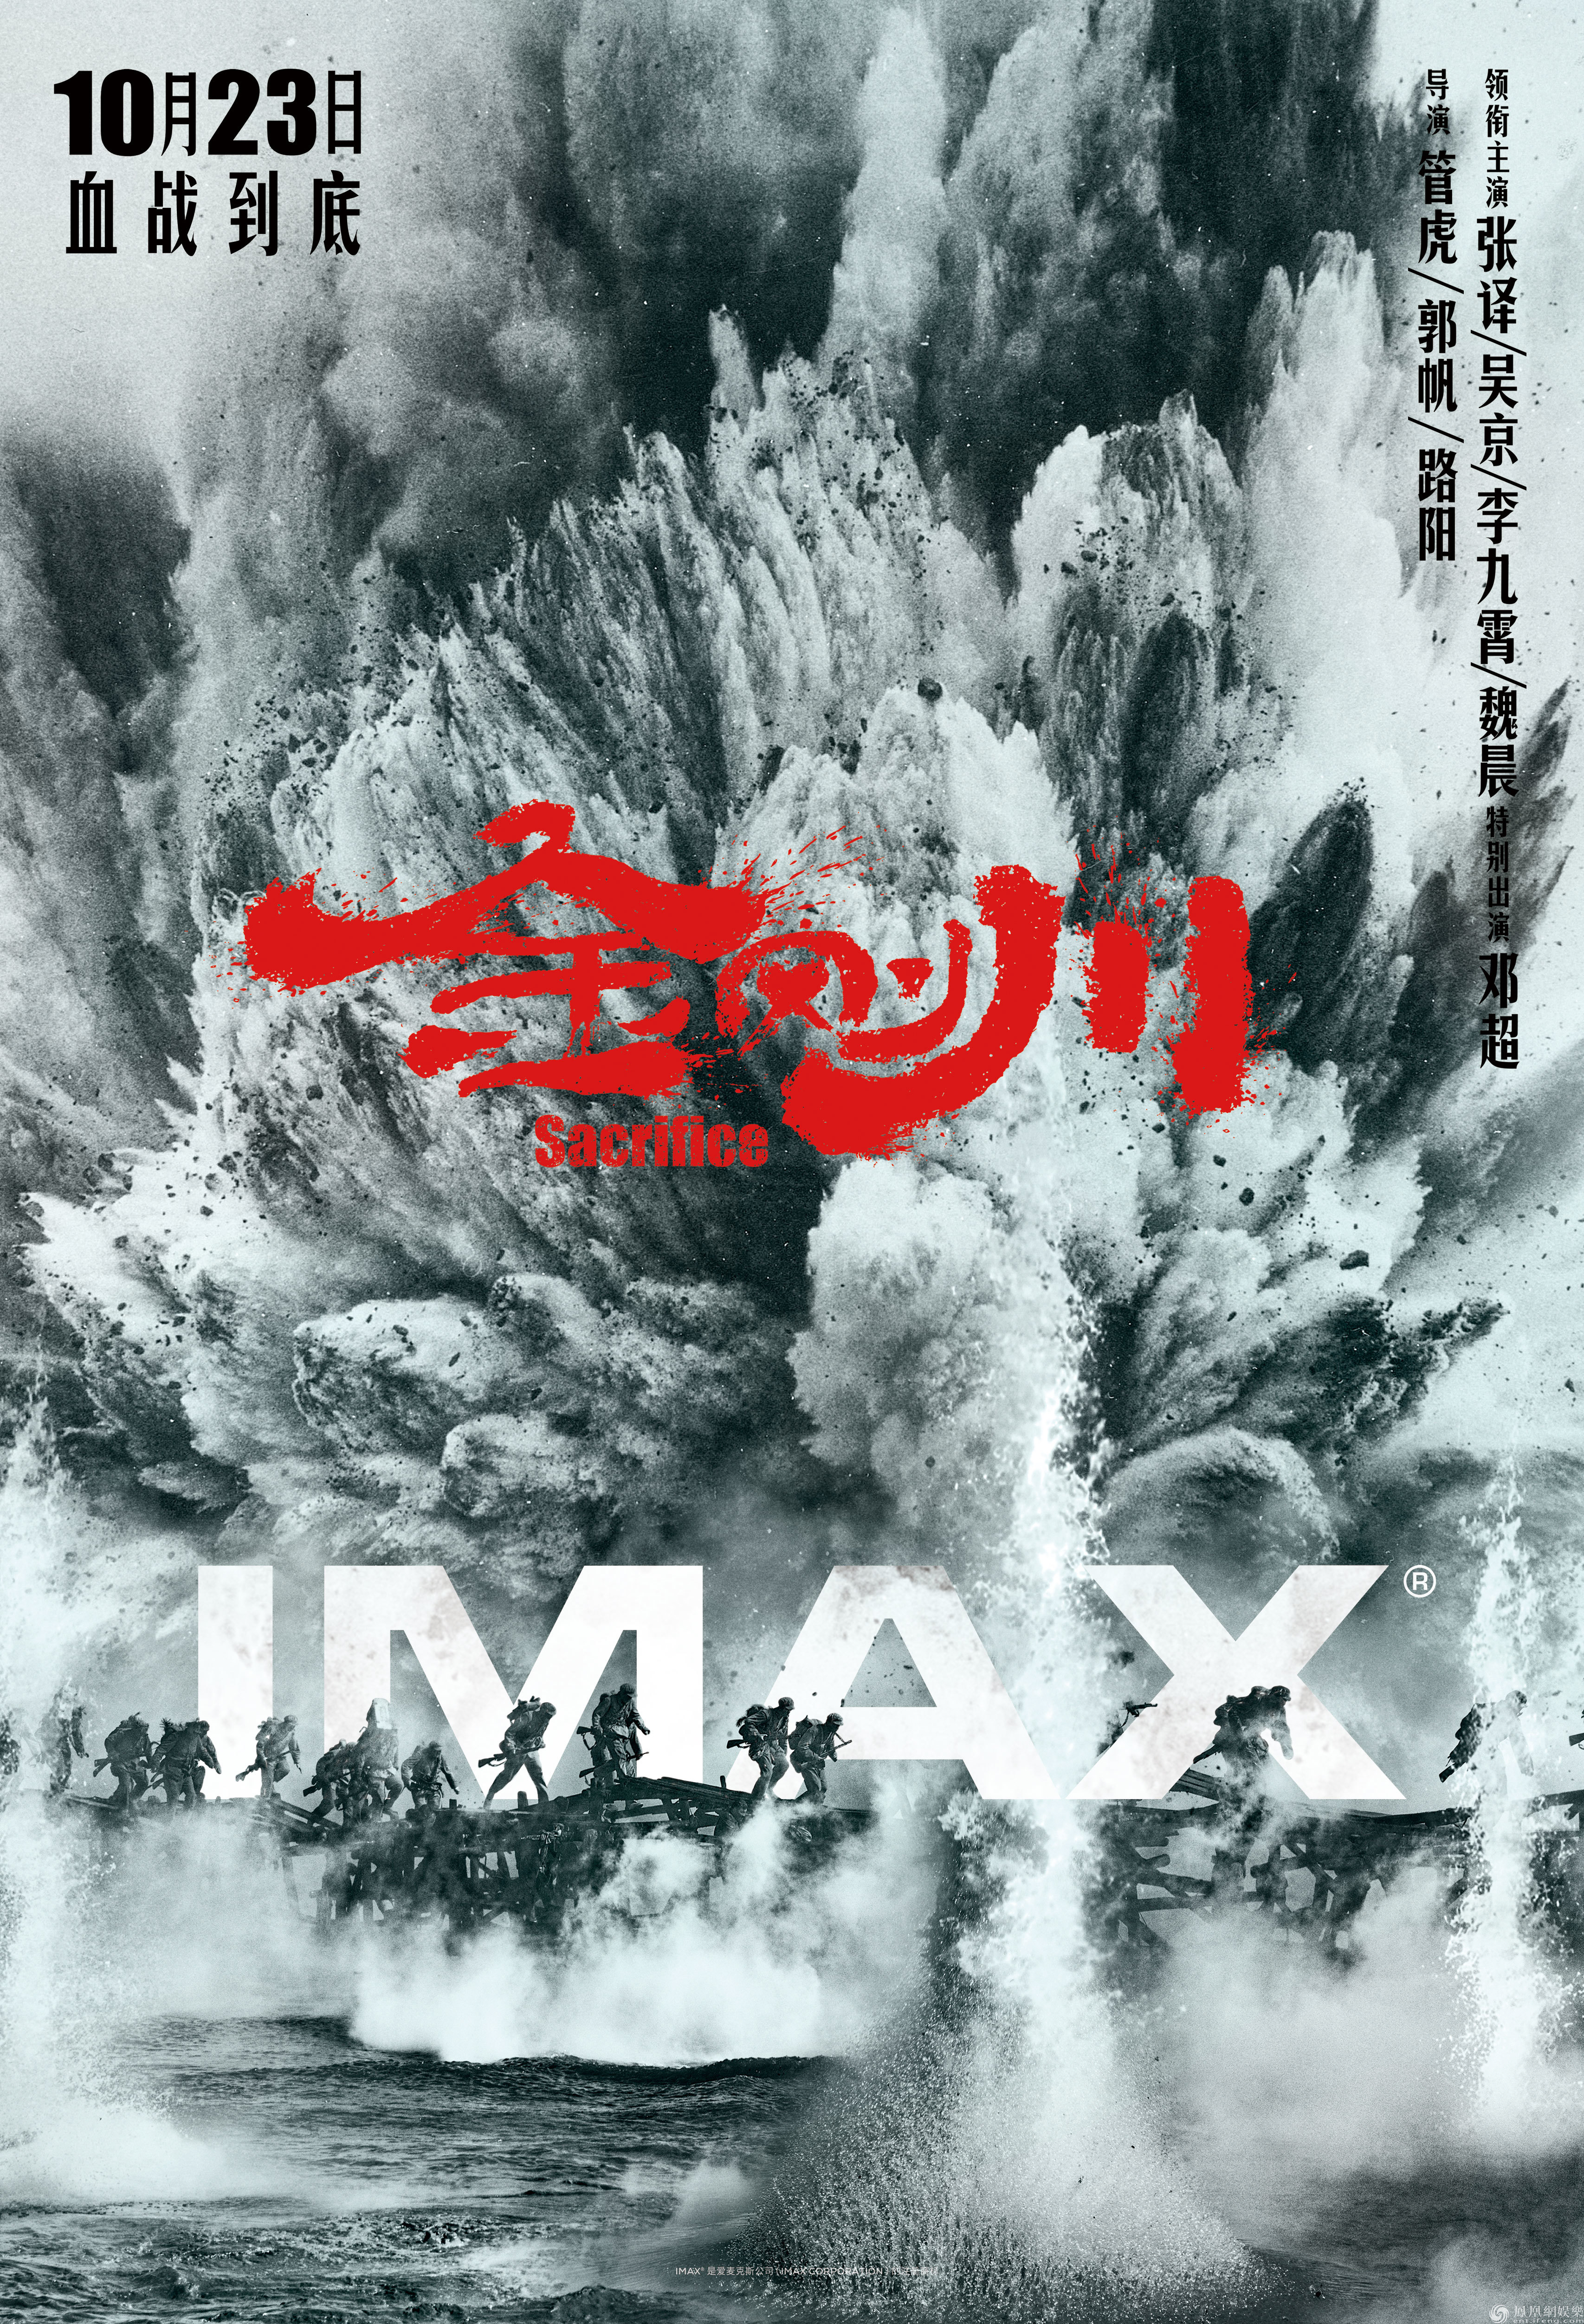 《金刚川》将于10月23日登陆全国imax影院 imax专属